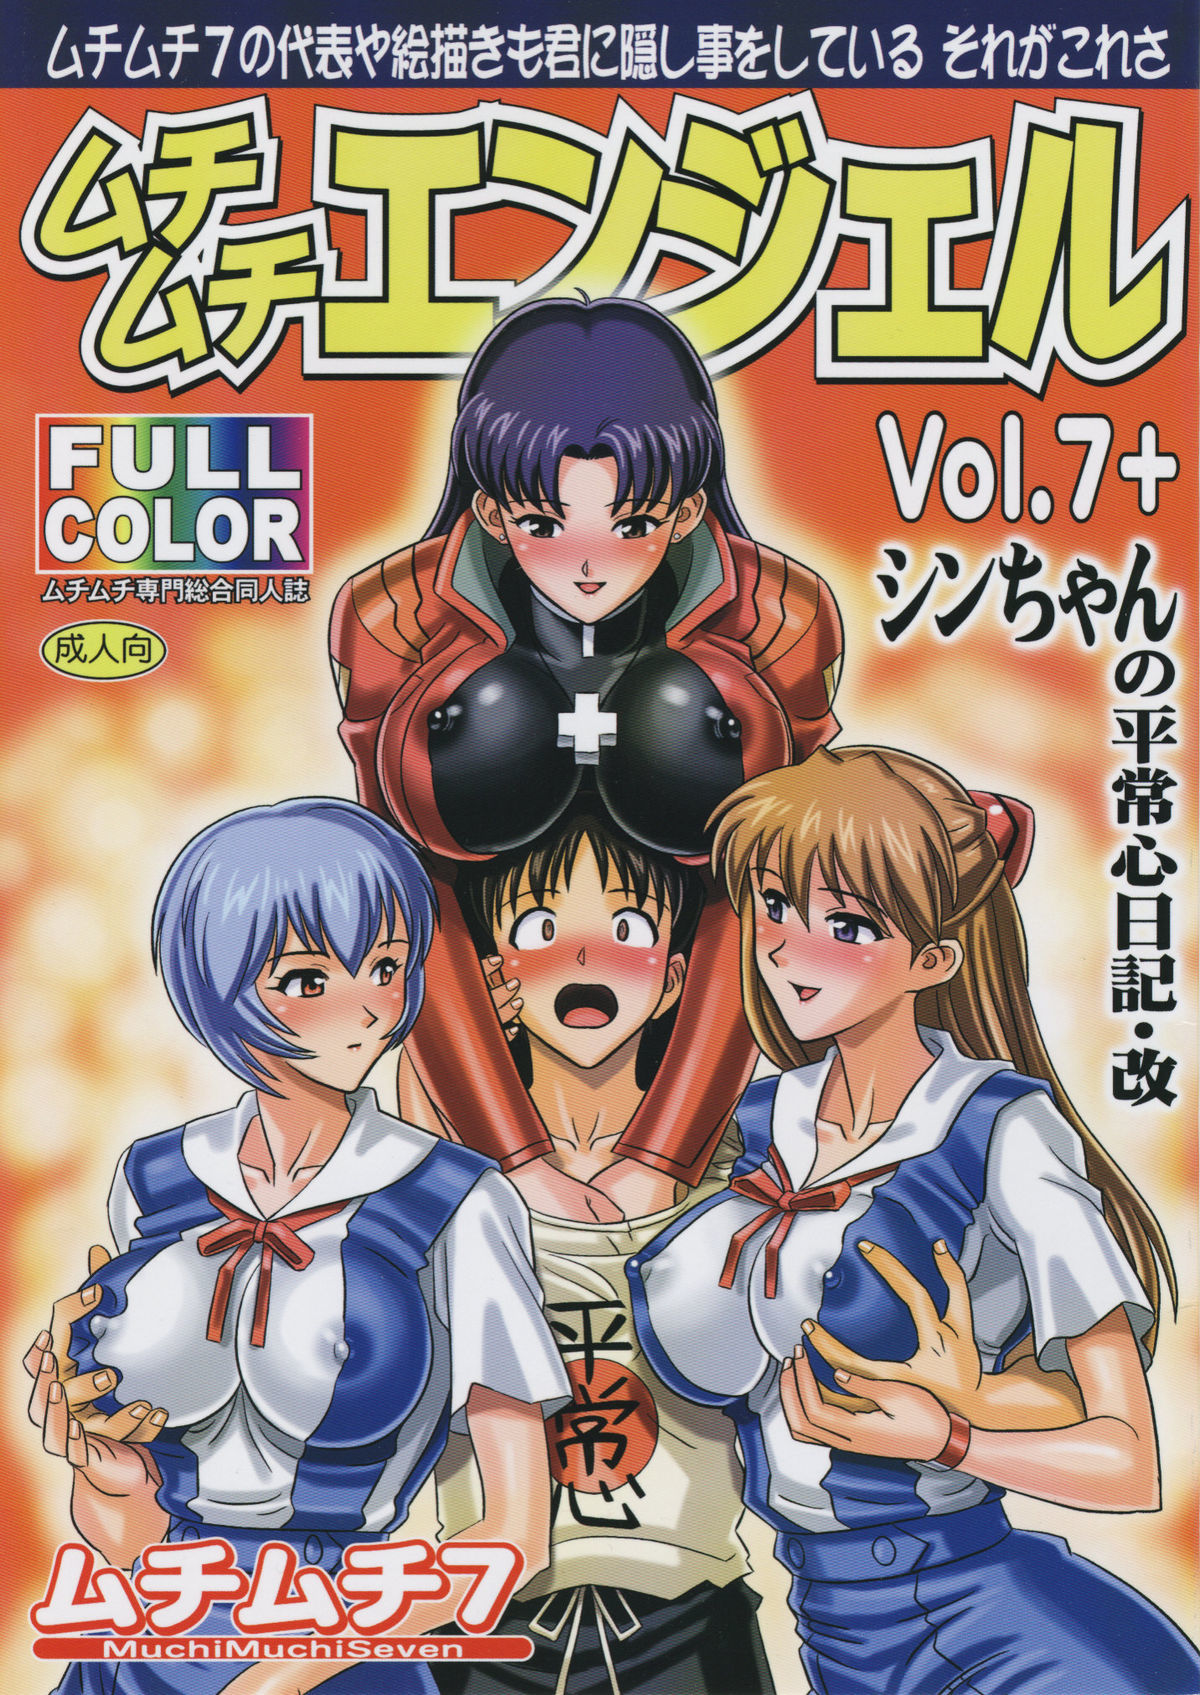 MuchiMuchi Angel Vol.7+ neon genesis evangelion hentai manga